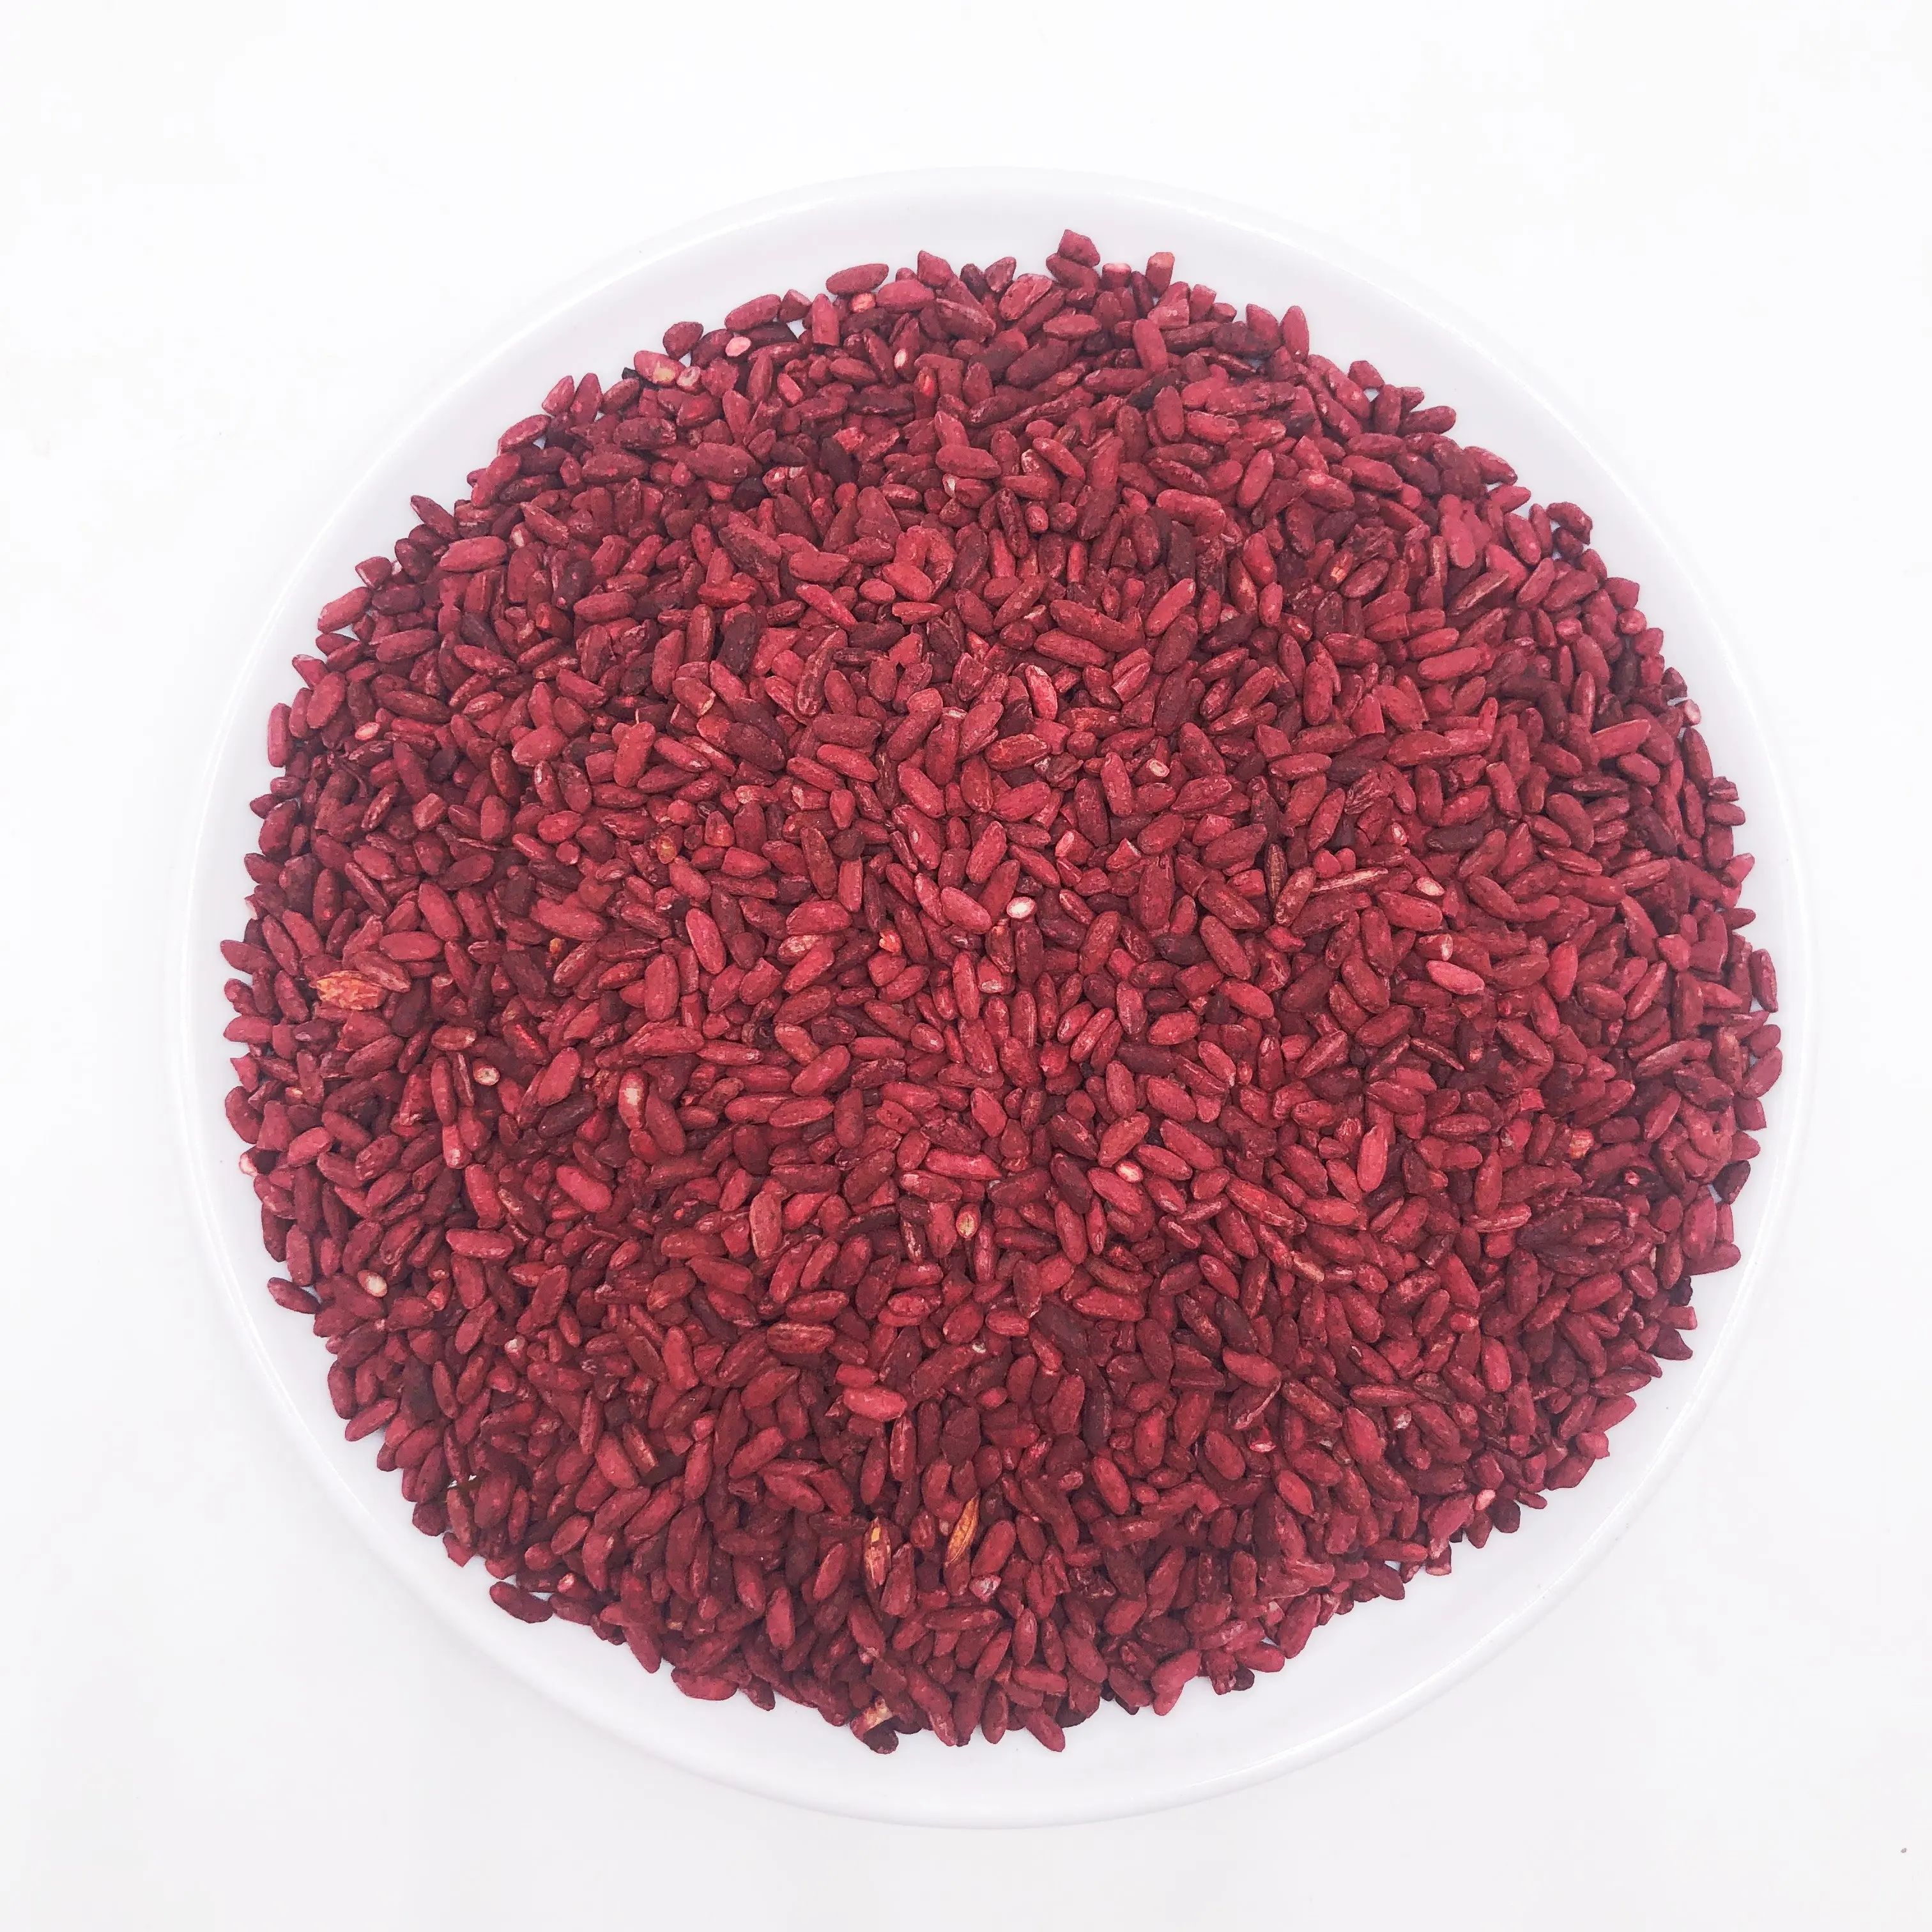 أرز أحمر كوجي من مصنع هونج كو مي 2143 أرز أحمر خمير مُخمَّر طبيعي يُستخدم في الغذاء